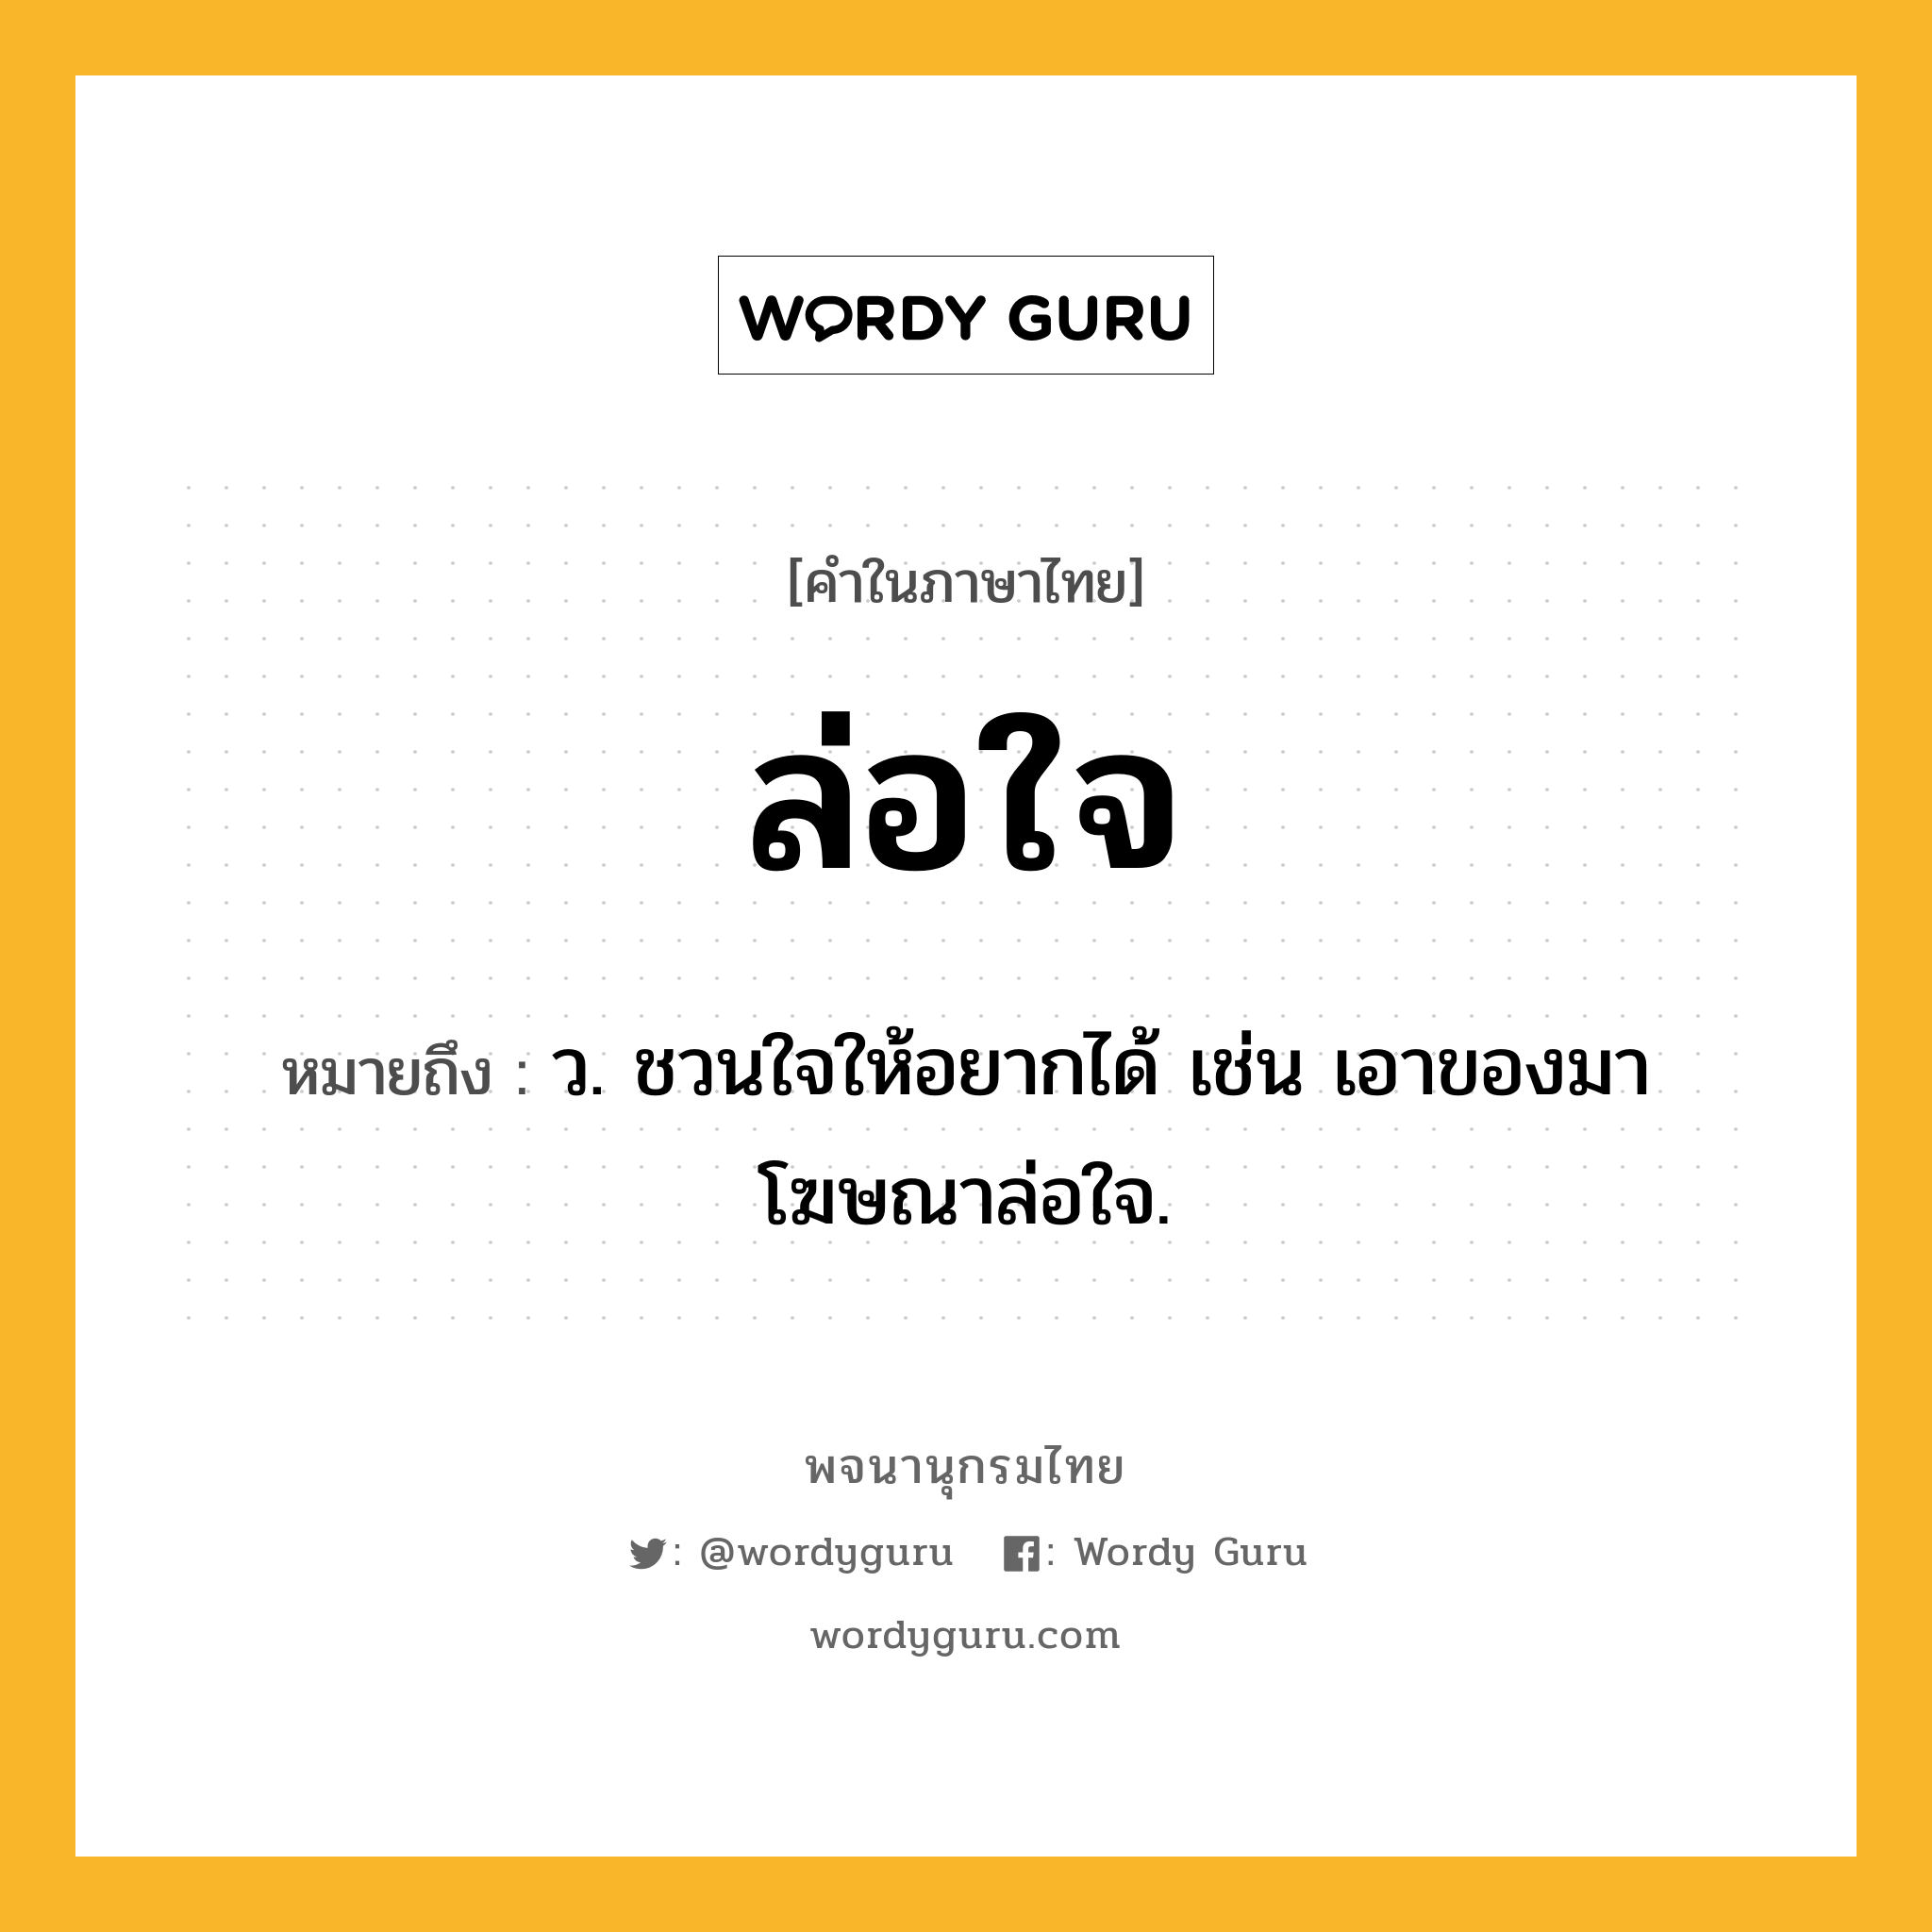 ล่อใจ ความหมาย หมายถึงอะไร?, คำในภาษาไทย ล่อใจ หมายถึง ว. ชวนใจให้อยากได้ เช่น เอาของมาโฆษณาล่อใจ.